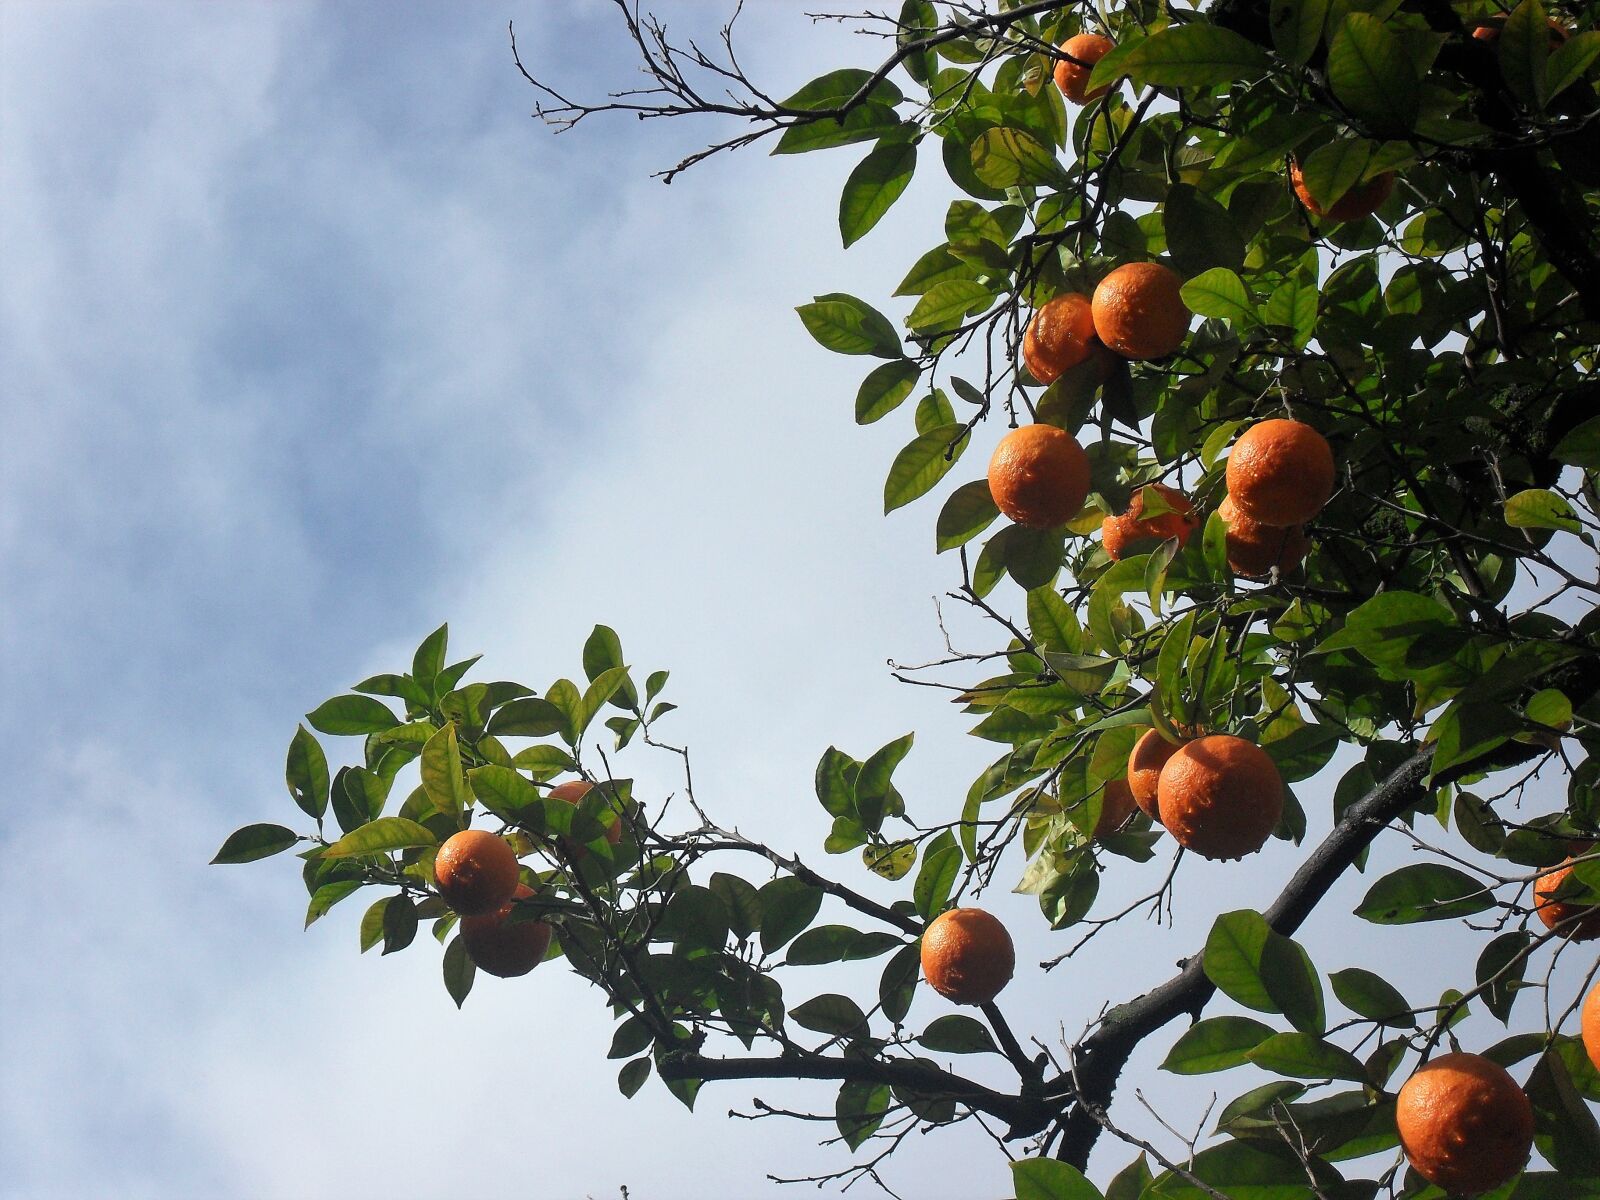 Samsung PL50 / VLUU PL50 /  SL202 sample photo. Orange, orange tree, tree photography